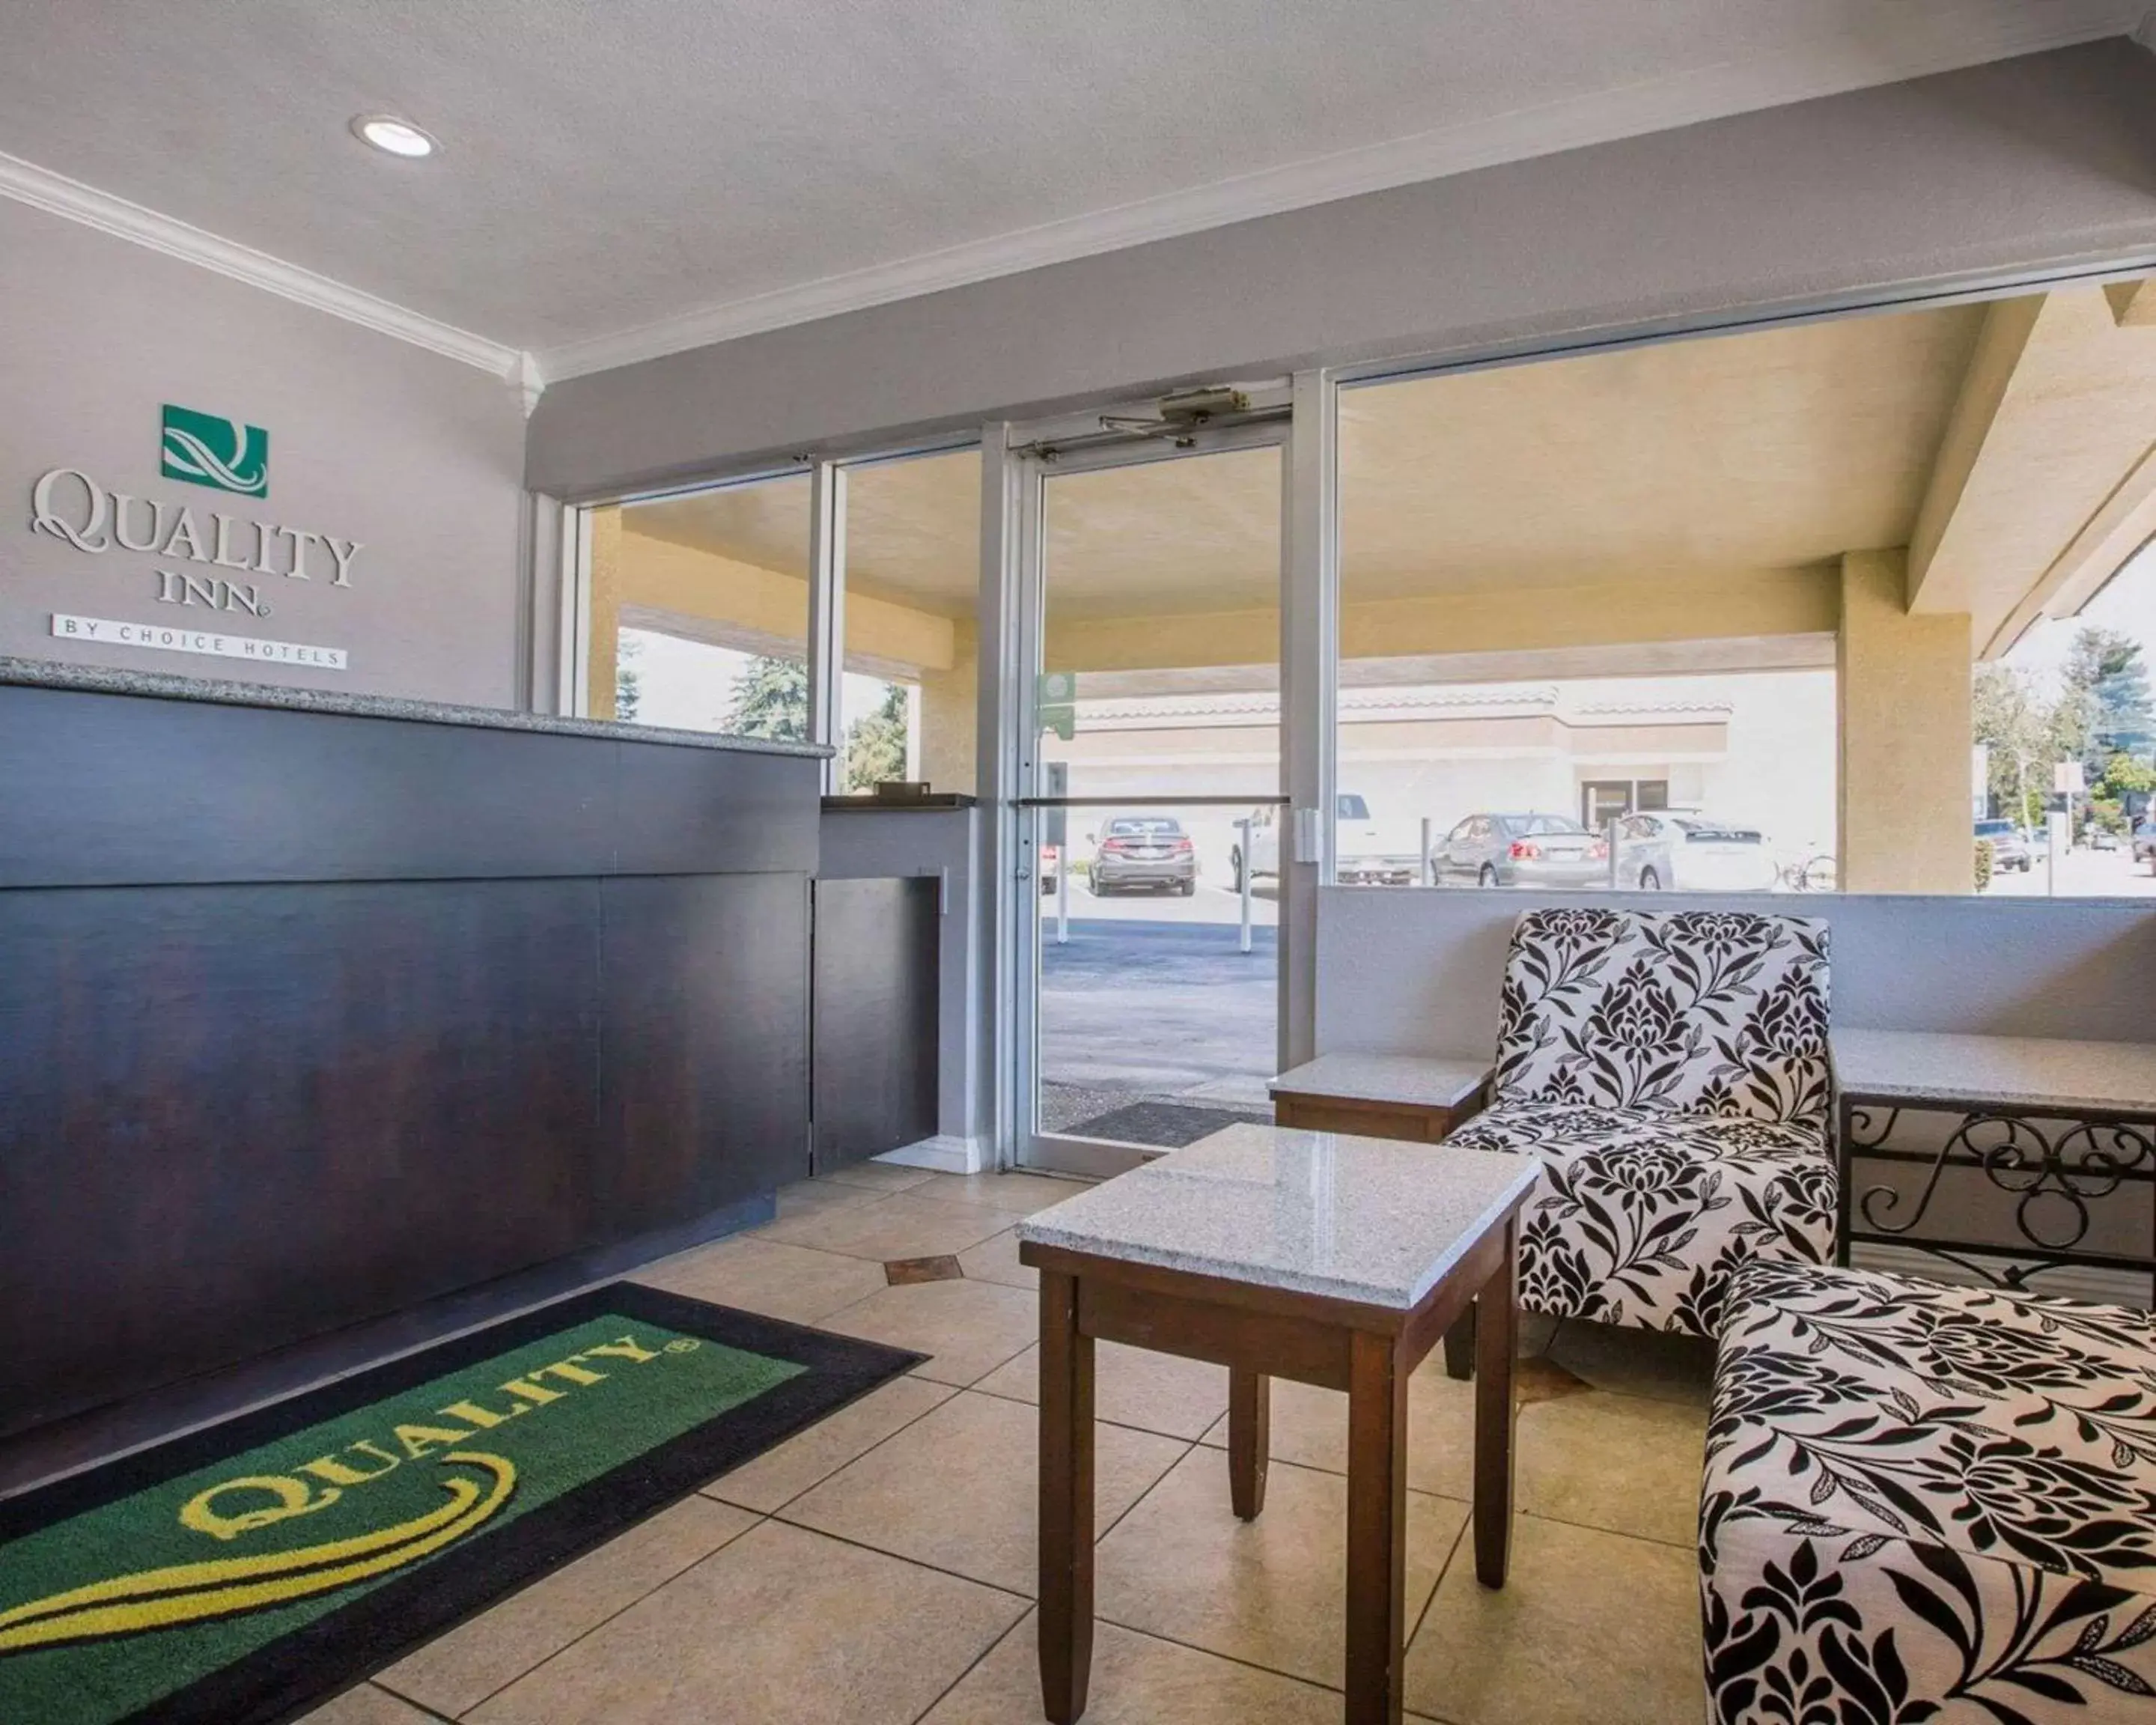 Lobby or reception, Lobby/Reception in Quality Inn Santa Cruz